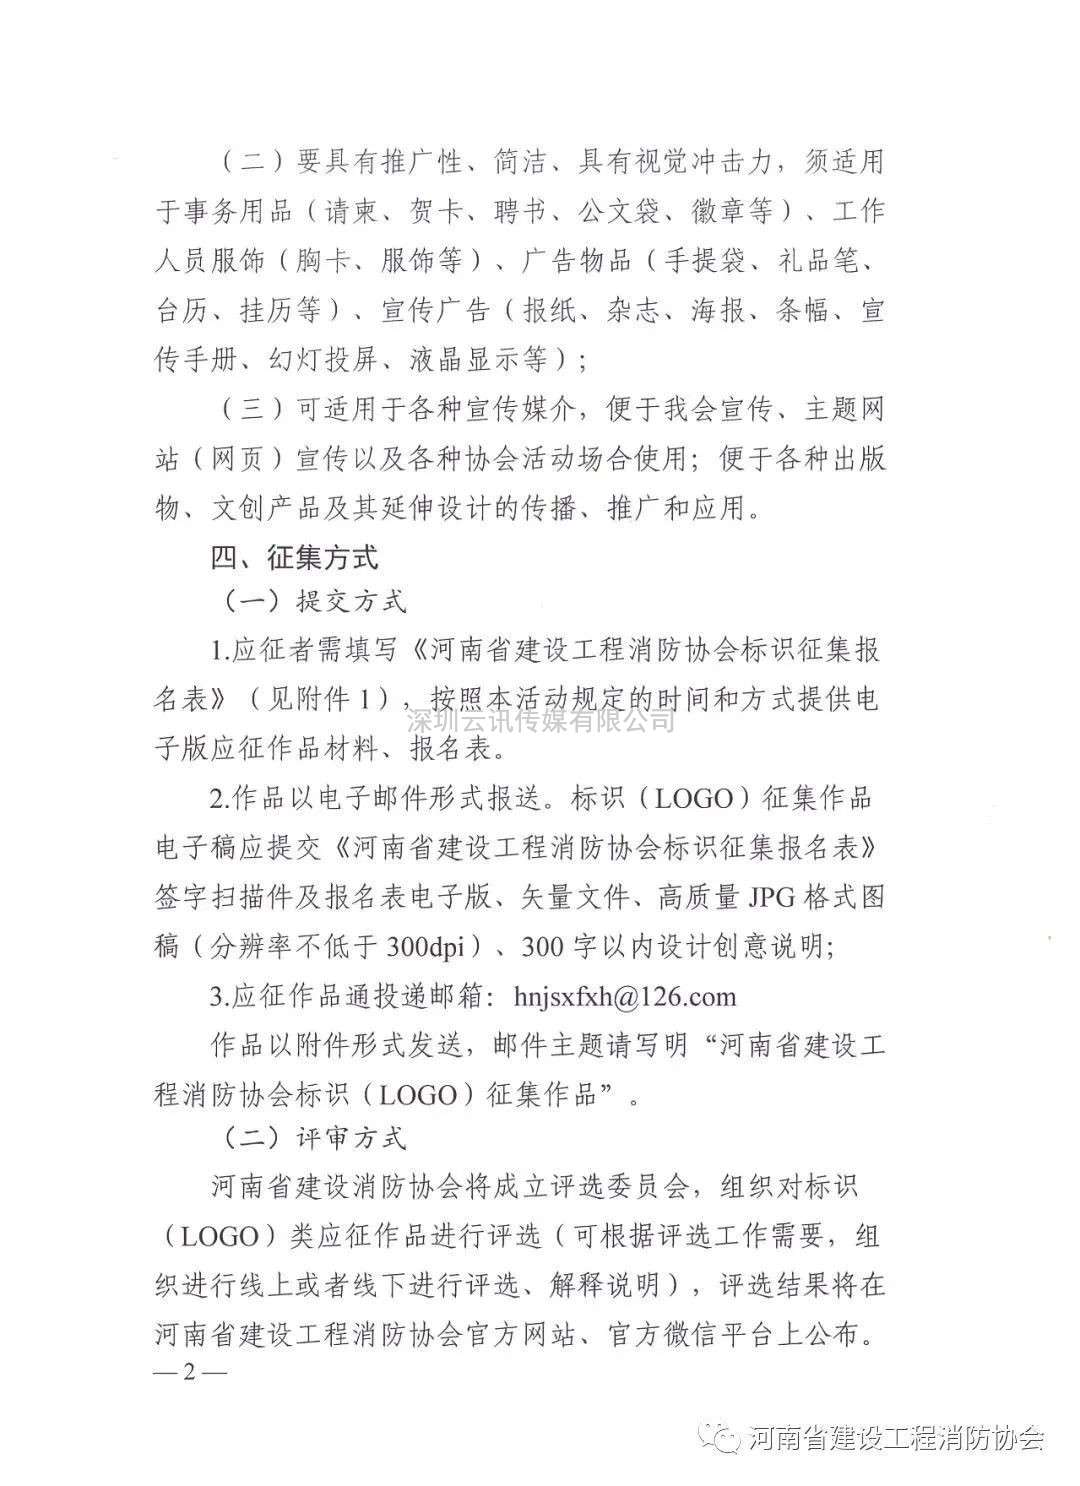 河南省建设工程消防协会关于广泛征集协会标识(LOGO)的函